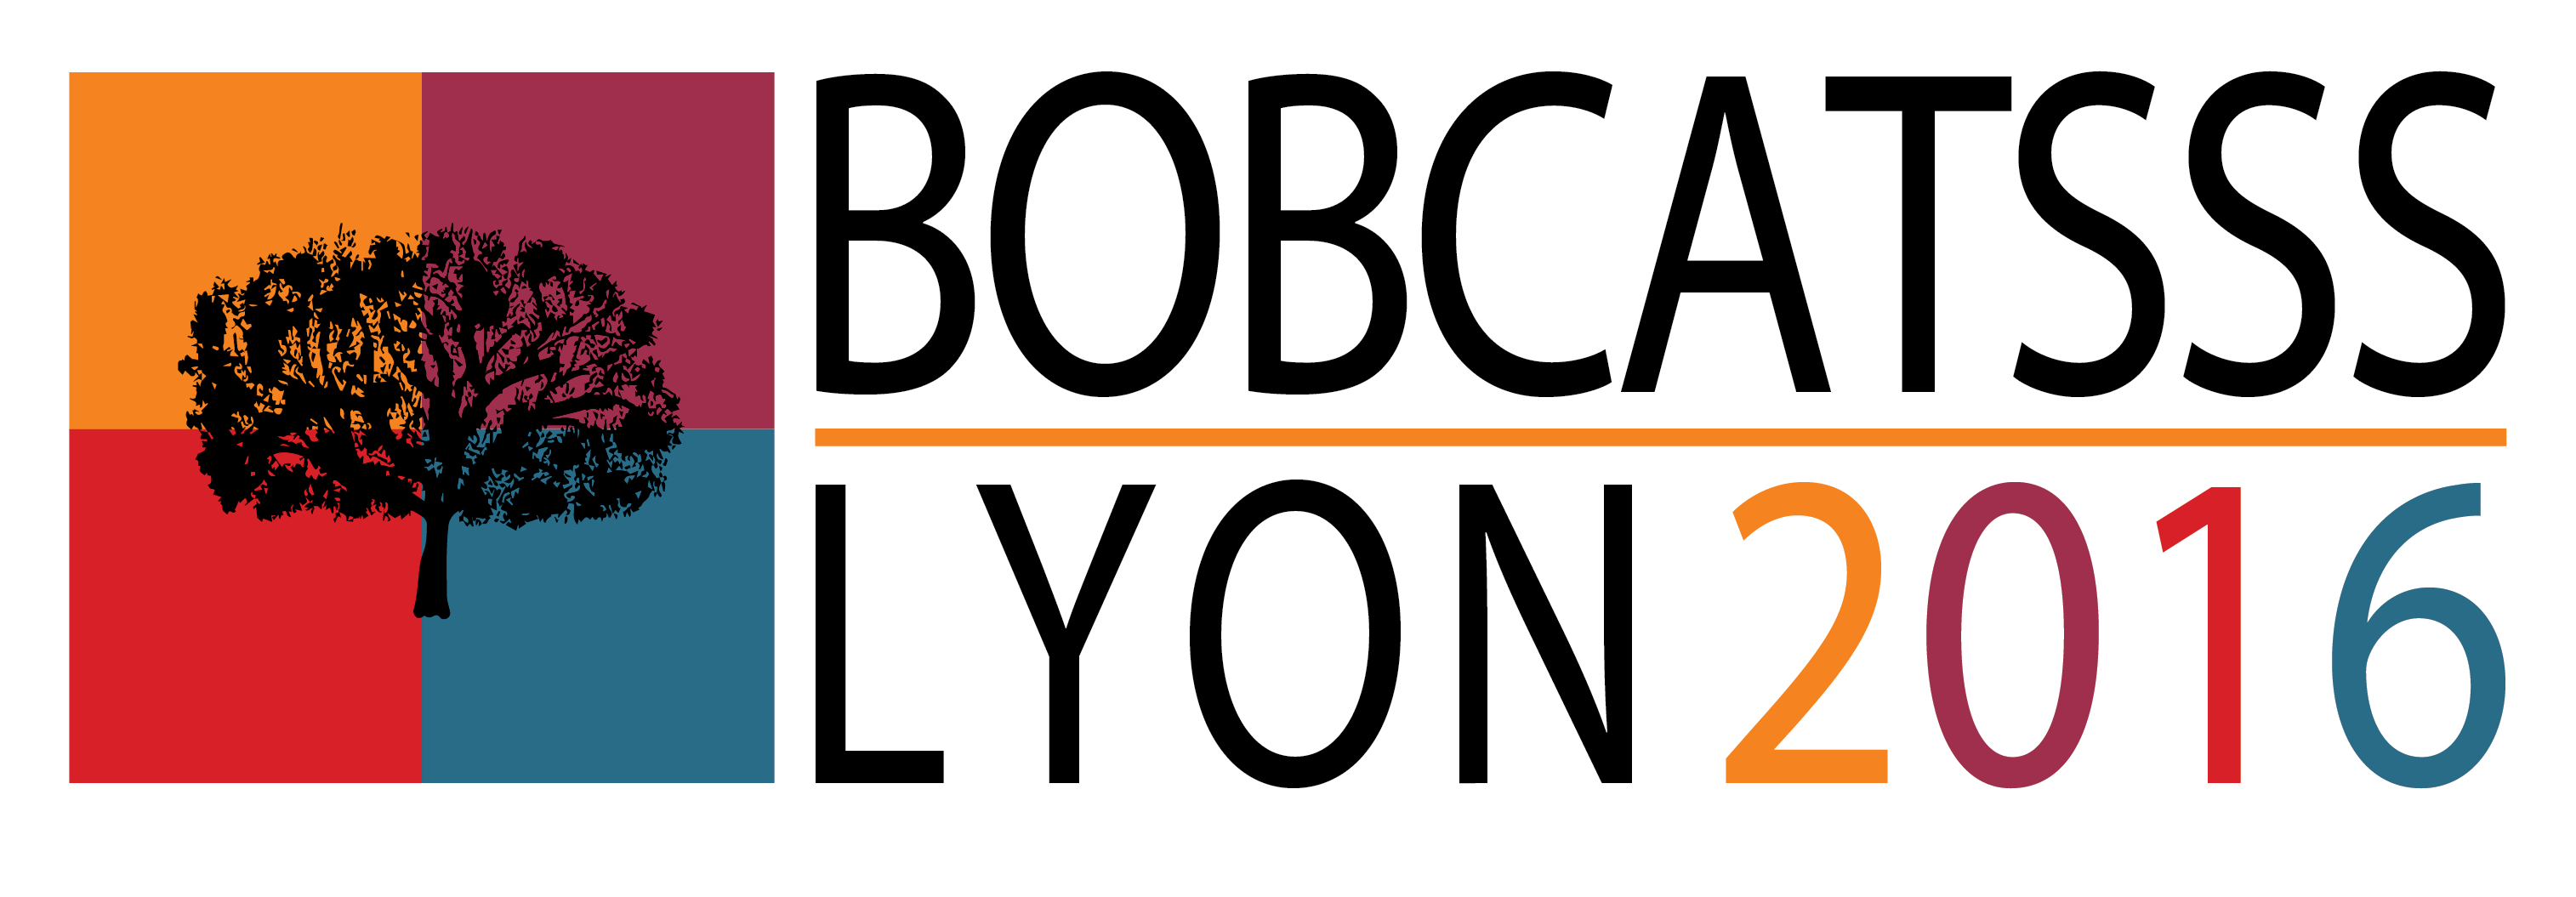 Logo Bobcatsss2016